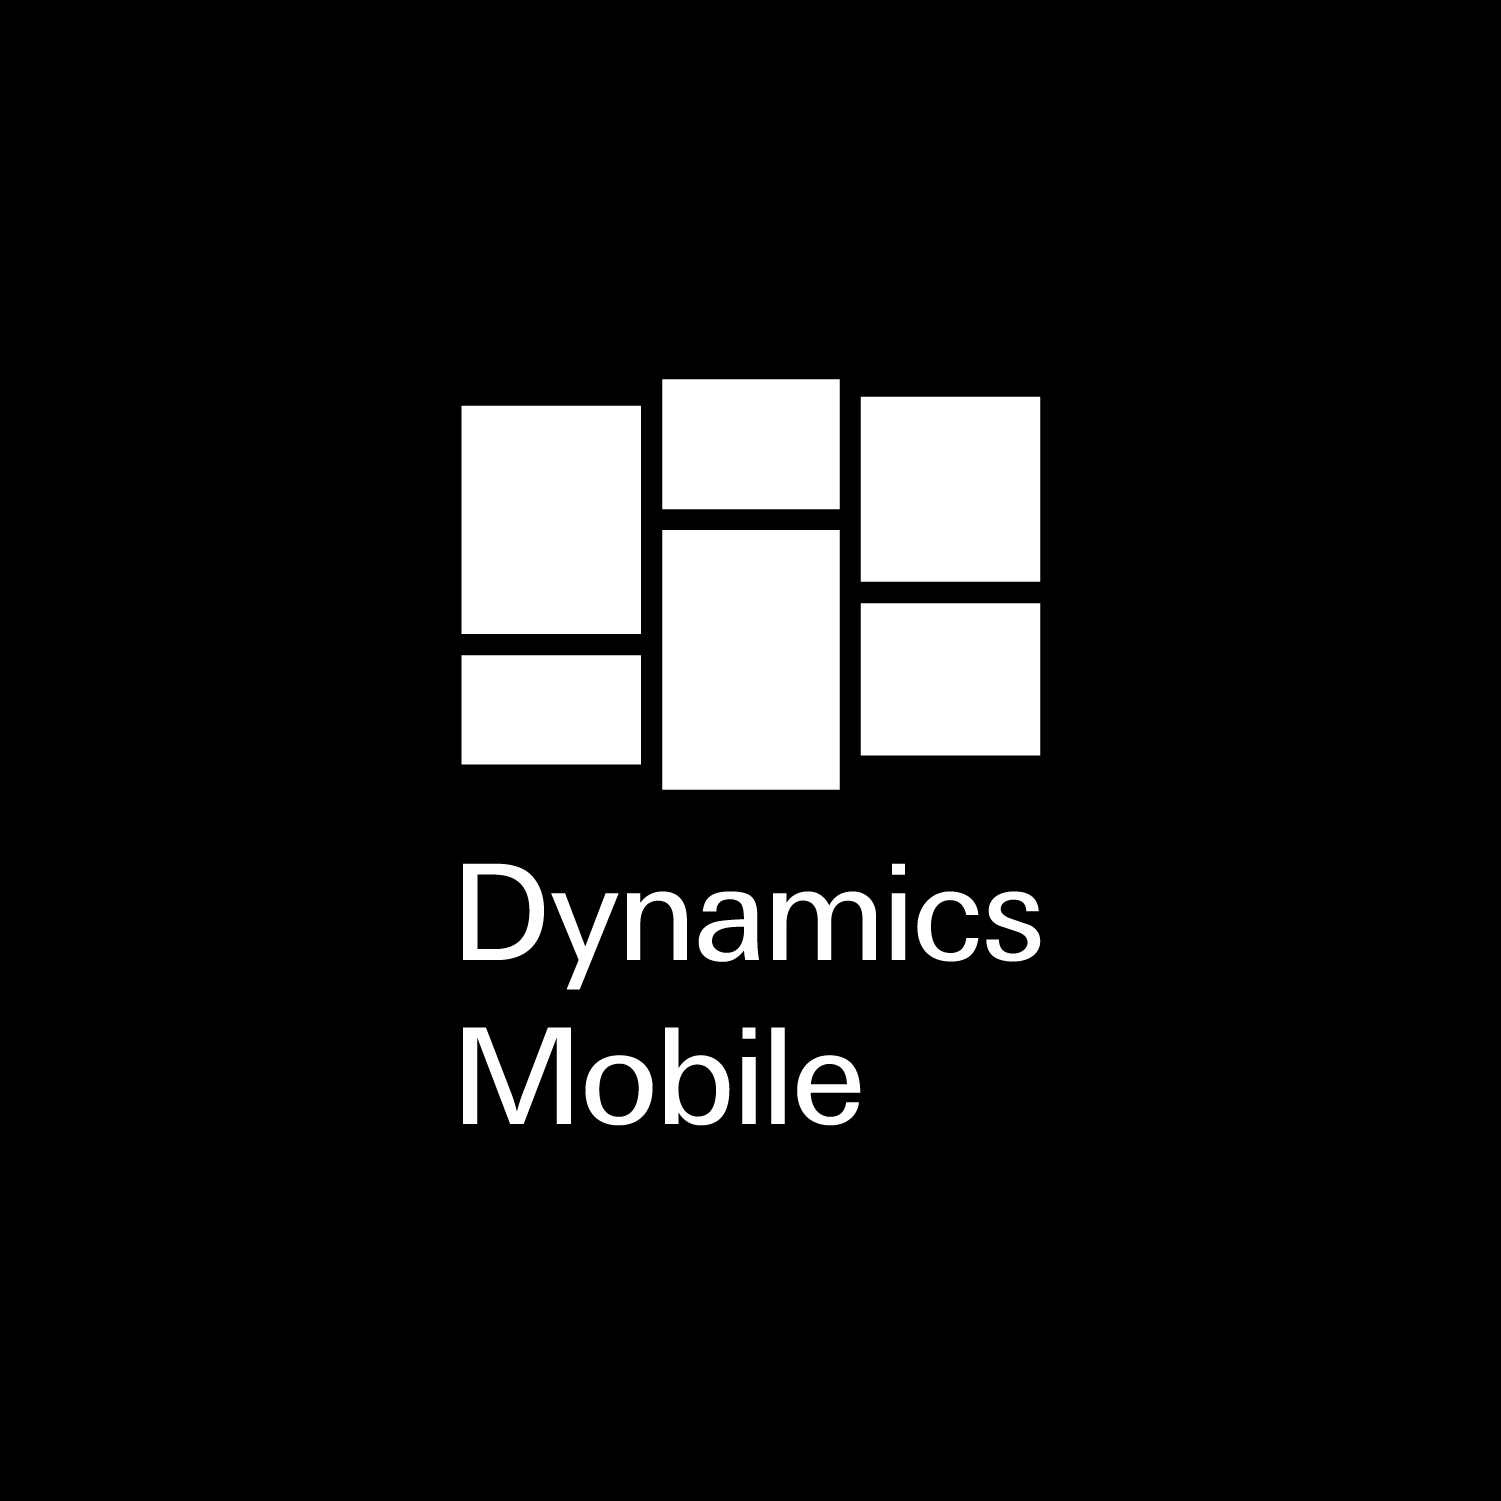 Dynamics Mobile